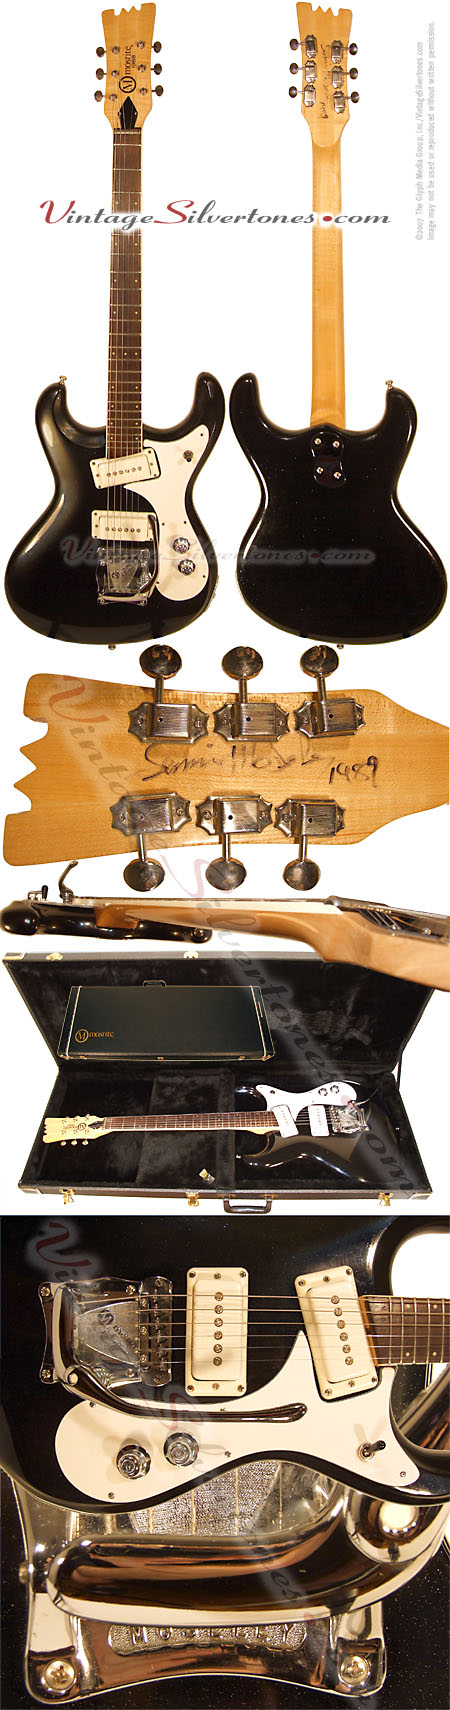 Mosrite - 1988-V88 solidbody electric guitar black sparkle finish NOS Moseley tremolo